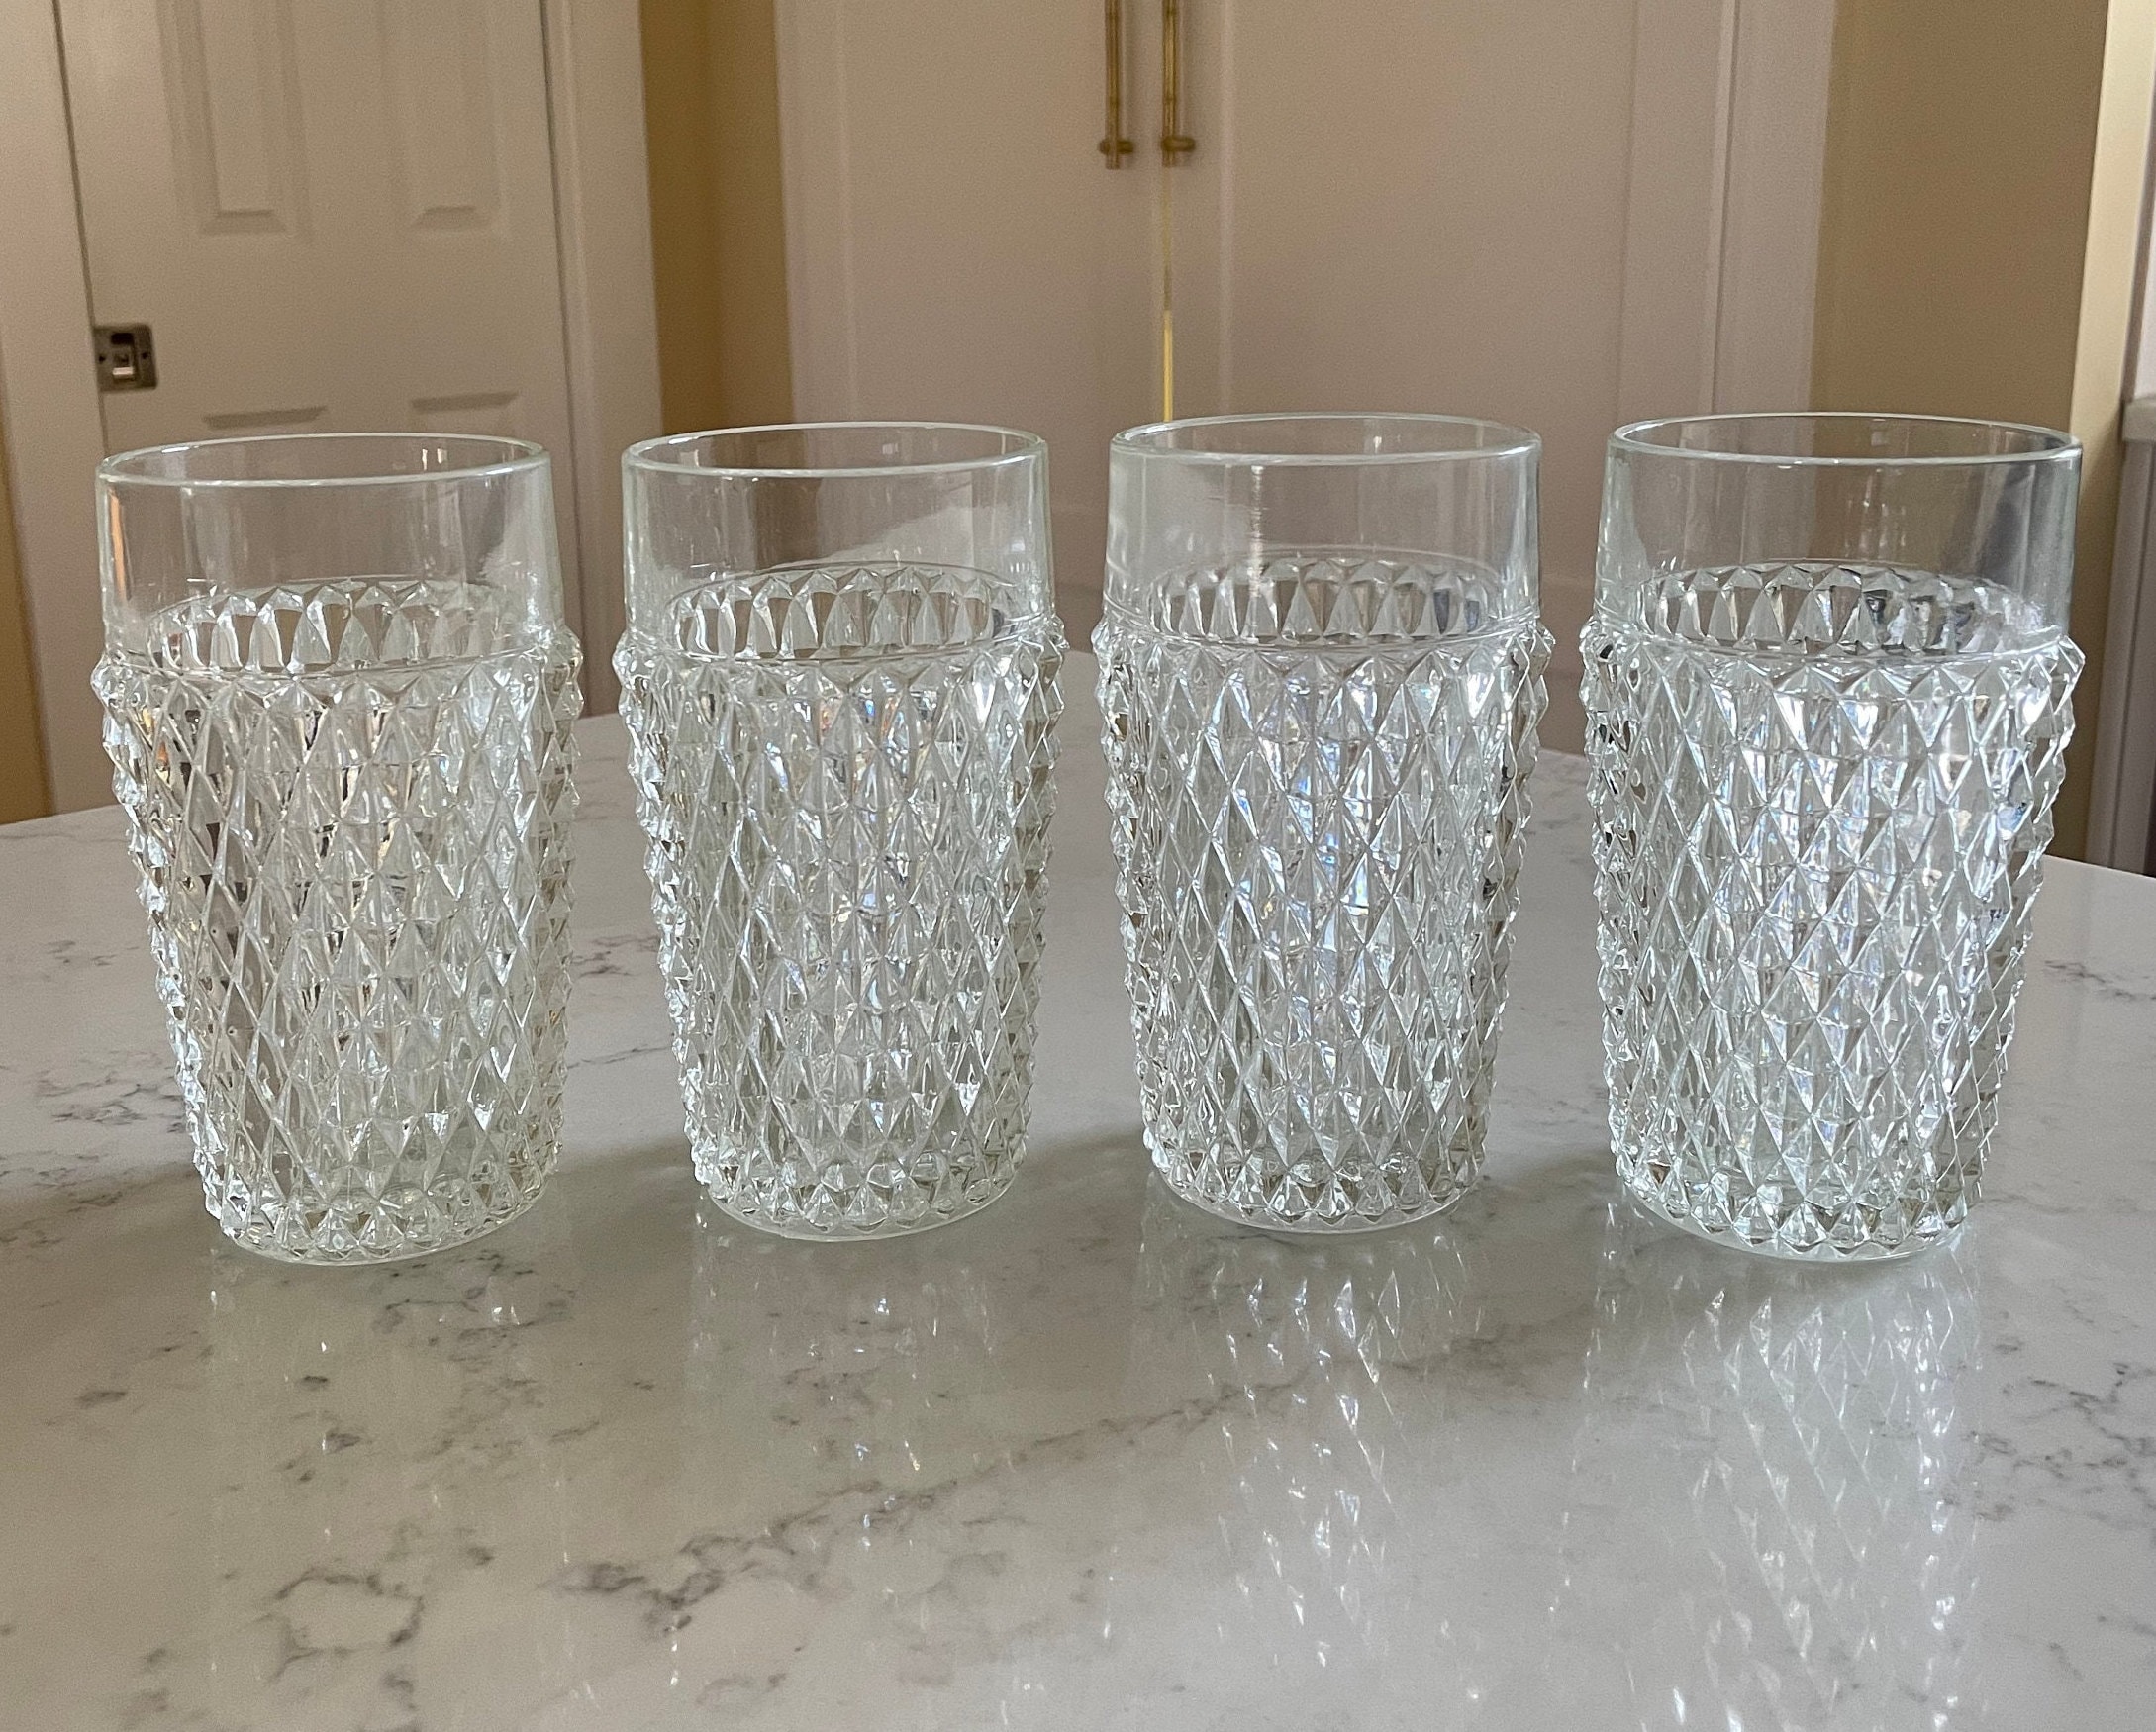 VTG Set of 12 Diamond Cut Paneled Lead Crystal Drinking Glasses Very Nice!